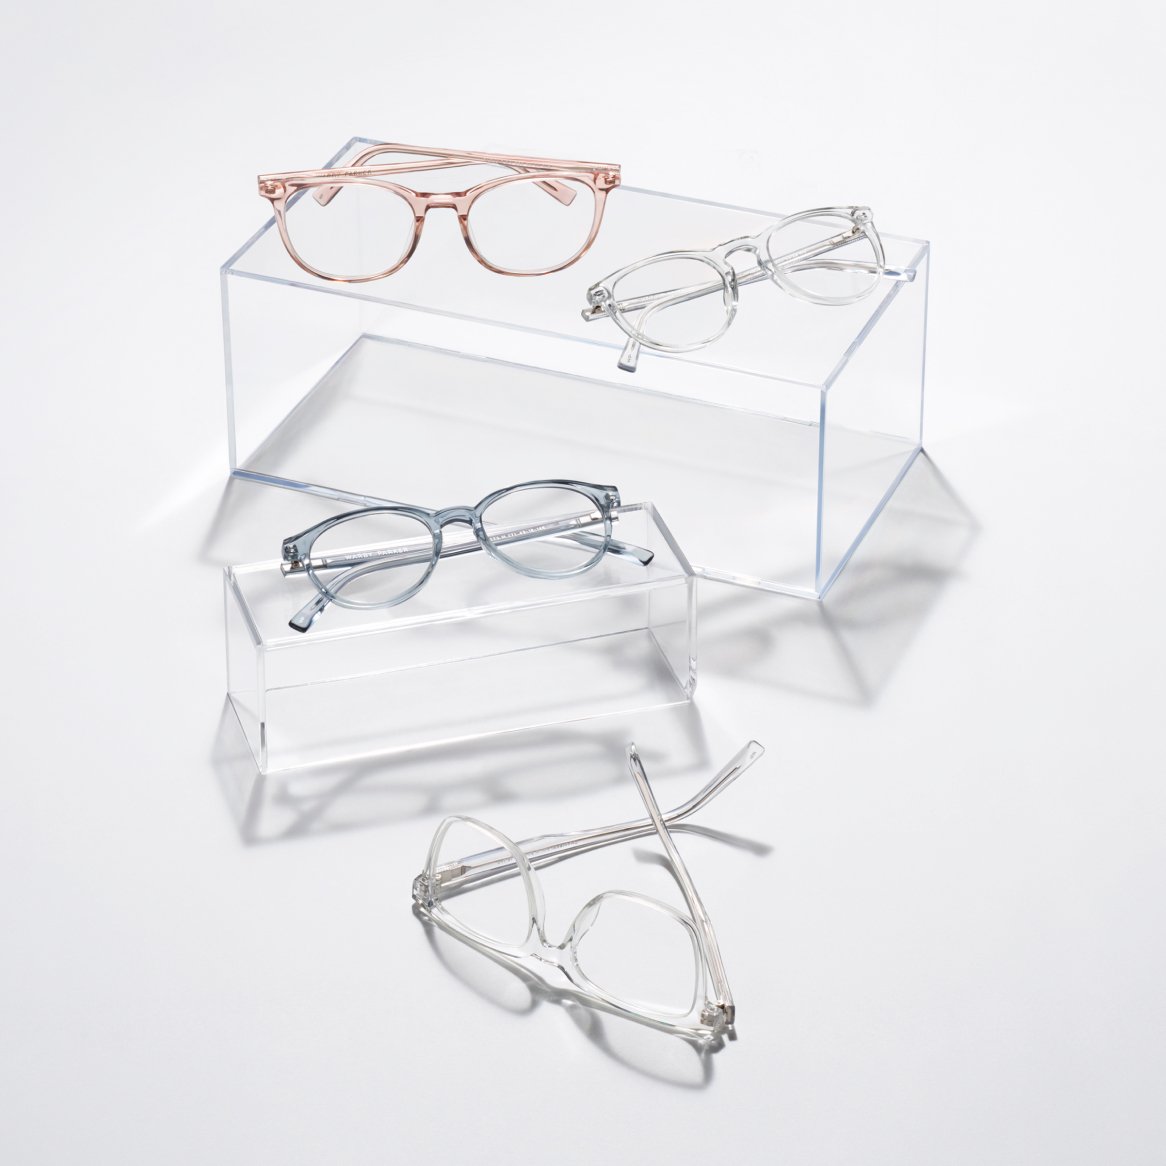 A display of multiple pairs of eyeglasses